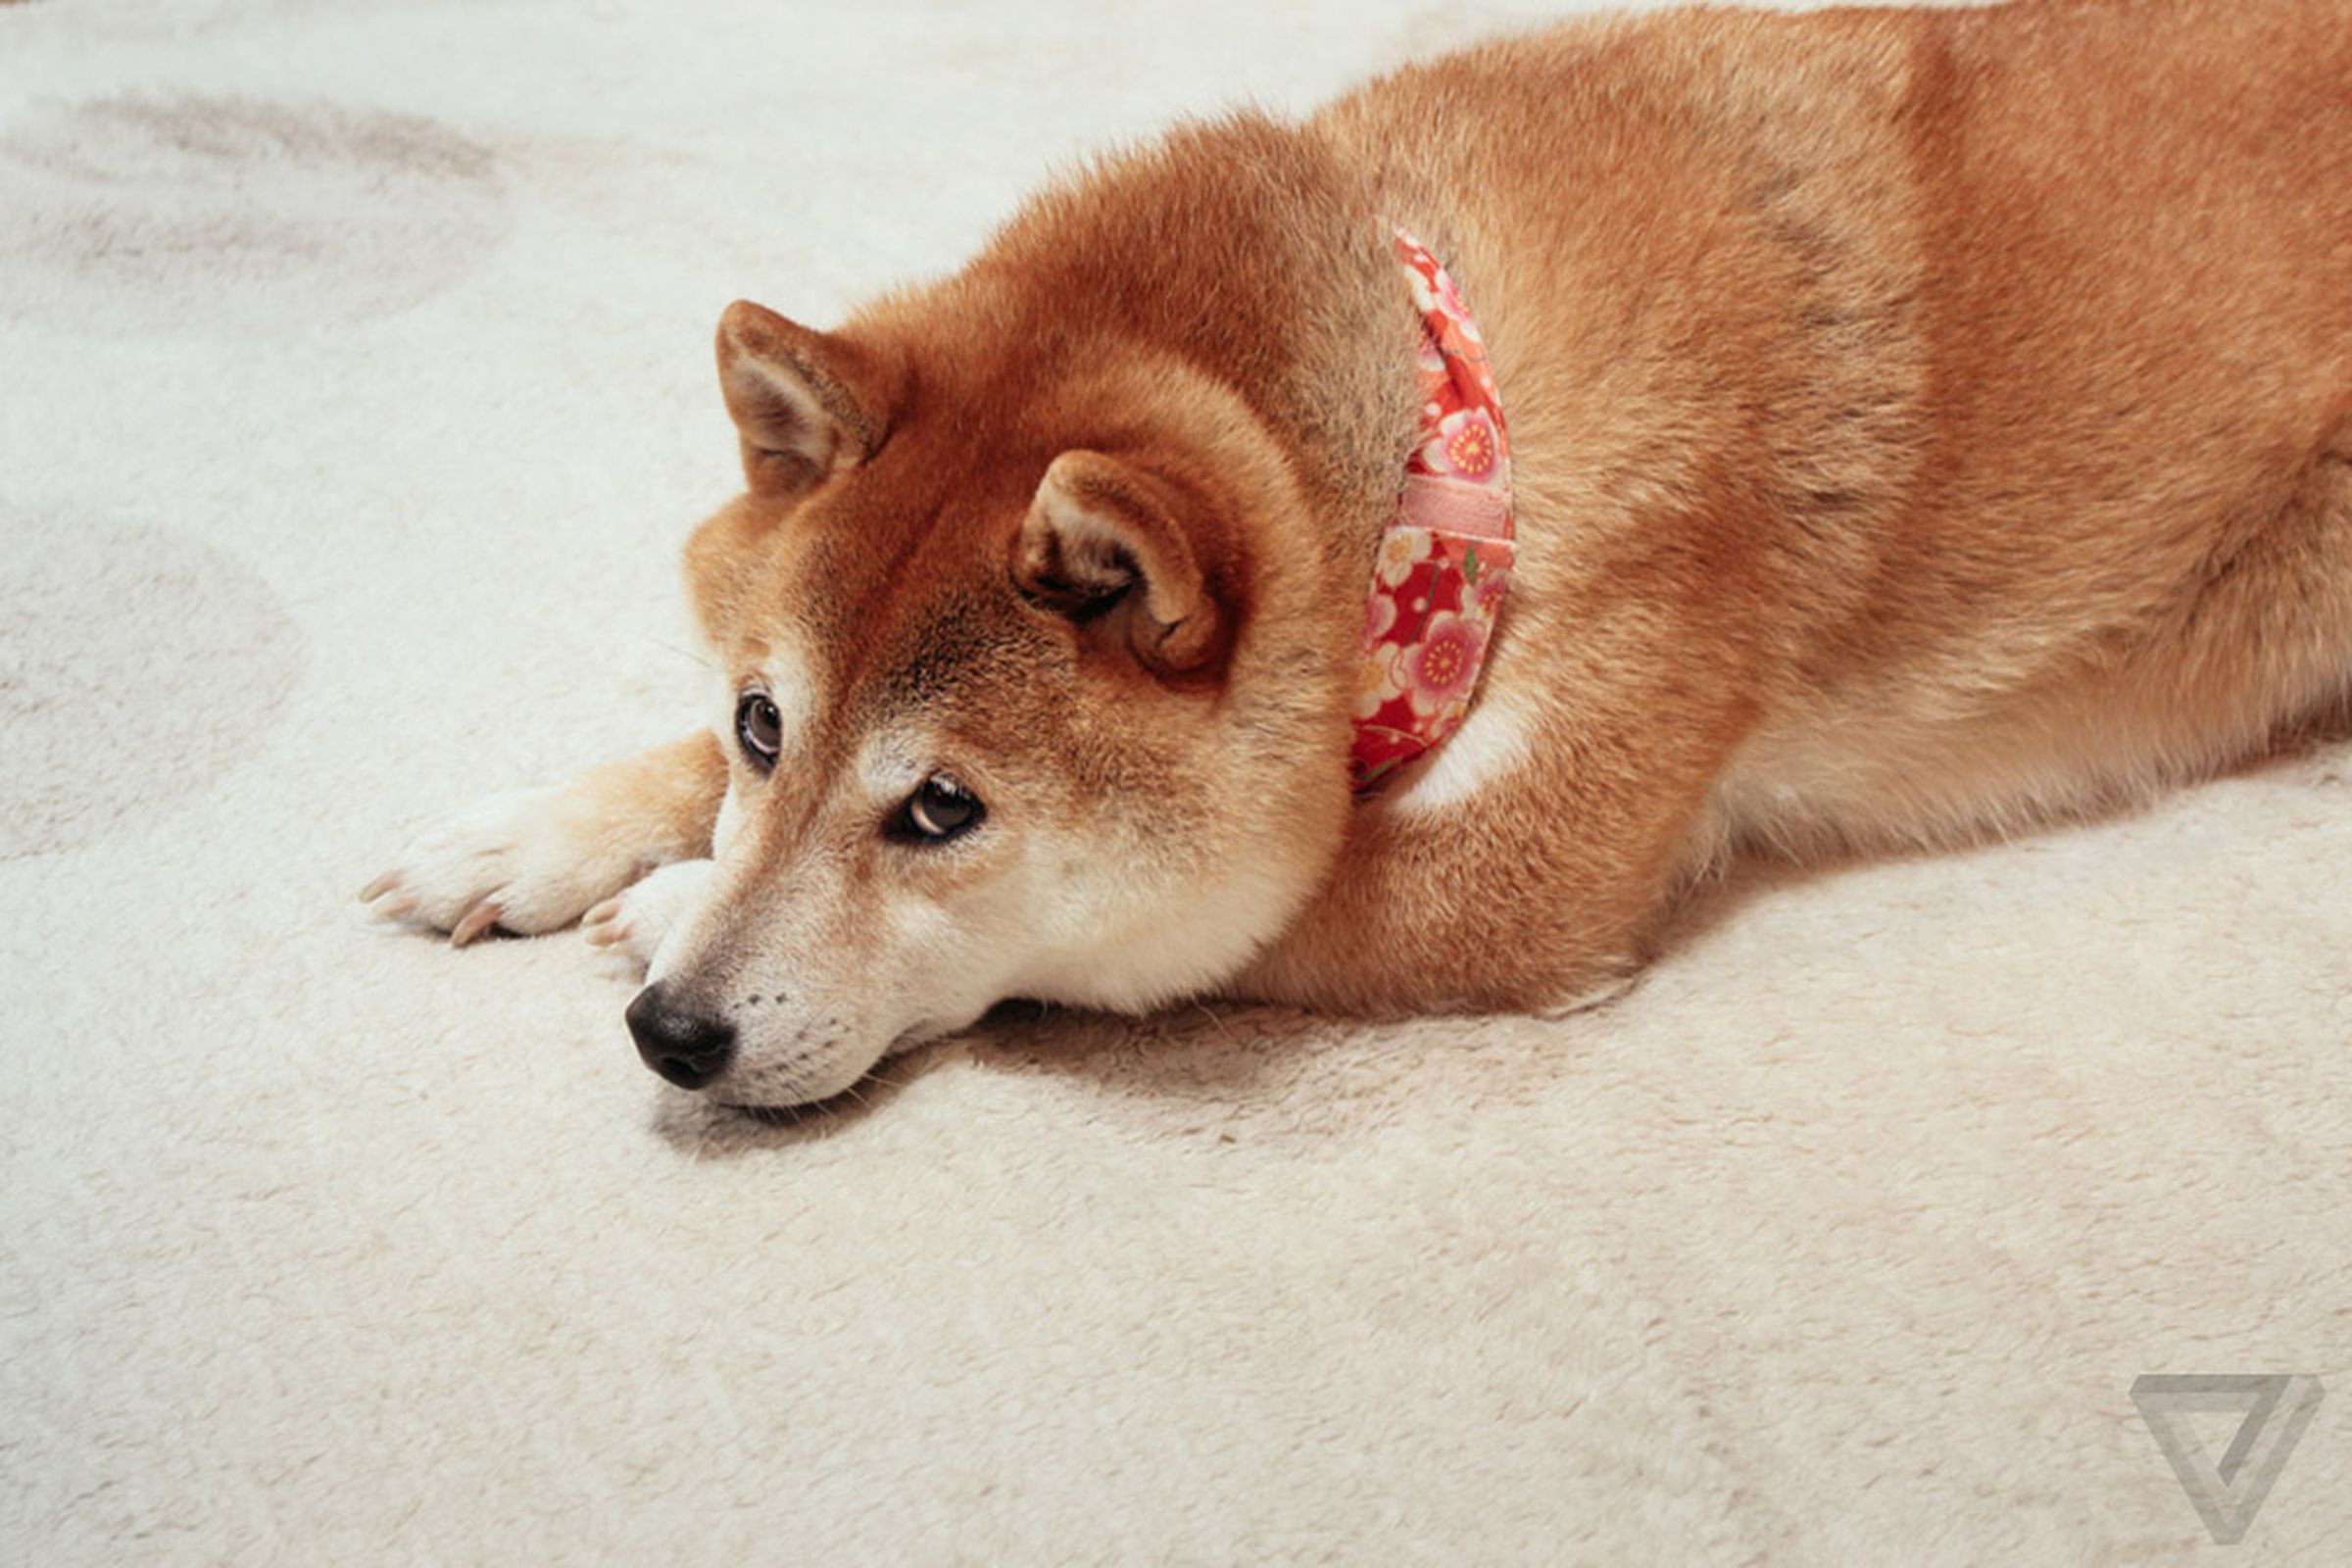 Kabosu, the shiba inu doge dog, lying on the floor, eyes peering up softly.